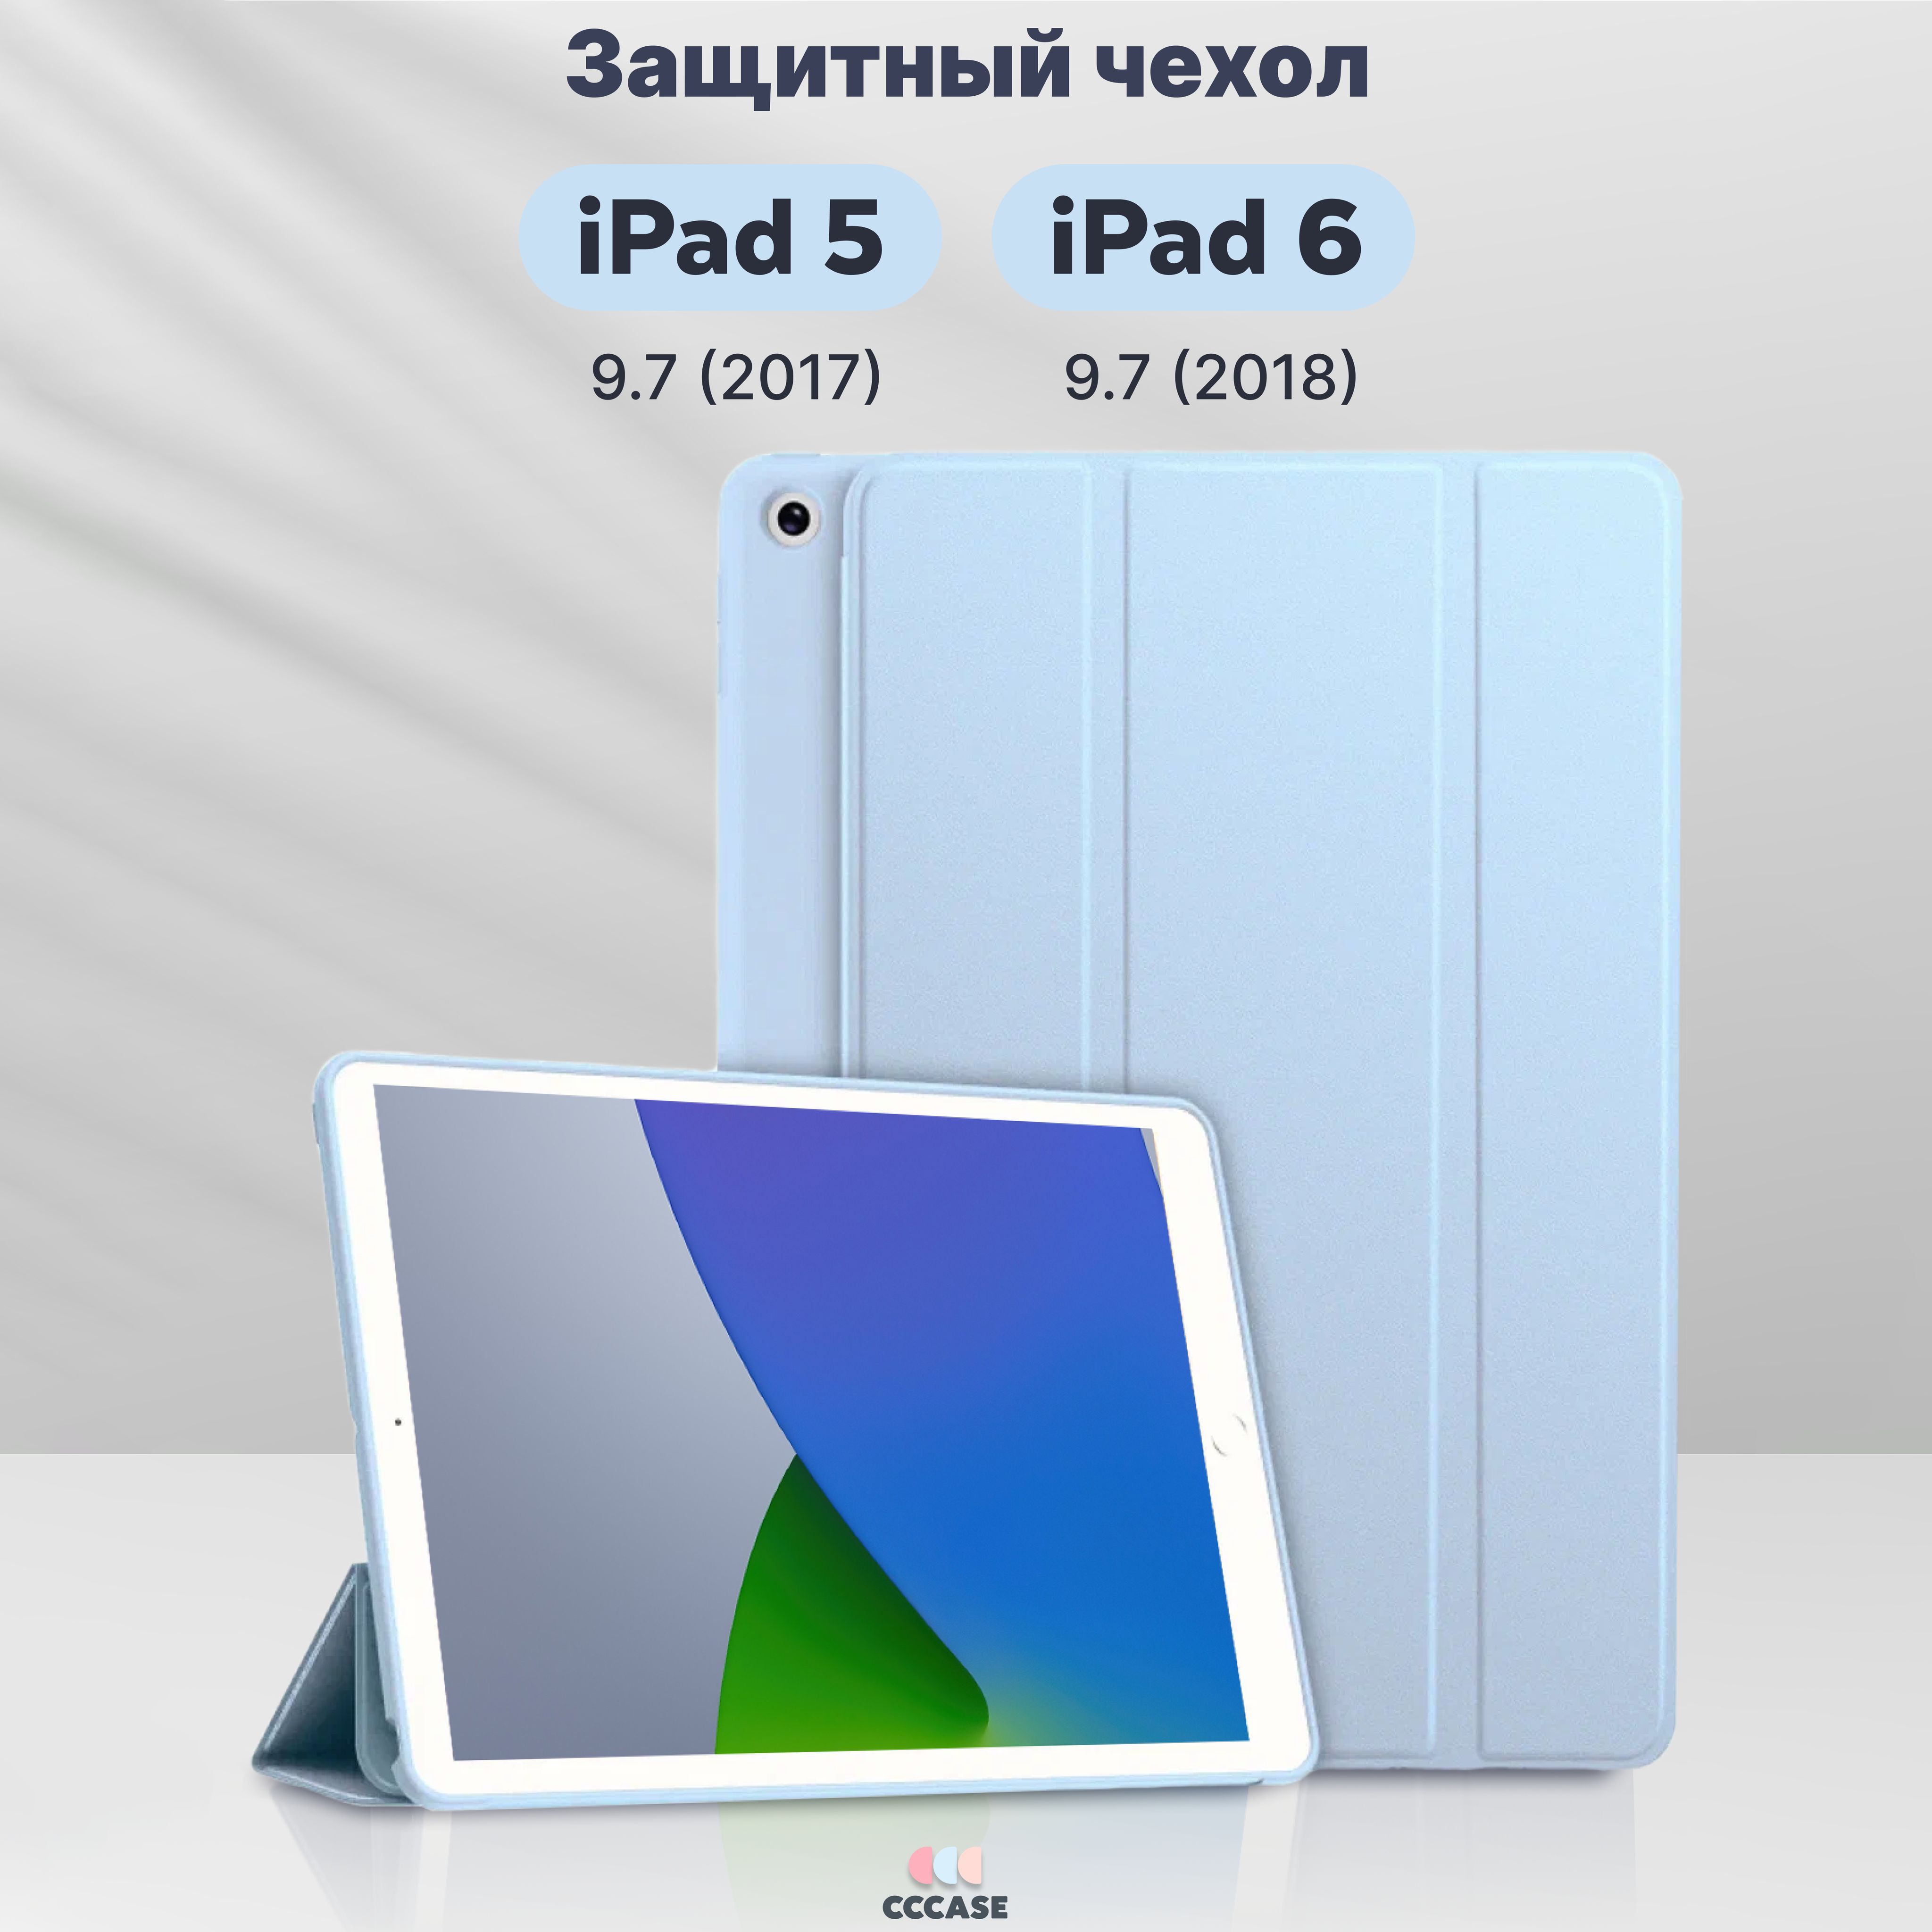 ЧехолкнижкаCCCASEдляAppleiPad59.7(2017)New/iPad69.7(2018)New-A1822,A1823,A1893,A1954,автоблокировкаэкрана,трансформируетсявподставку,цвет:голубой